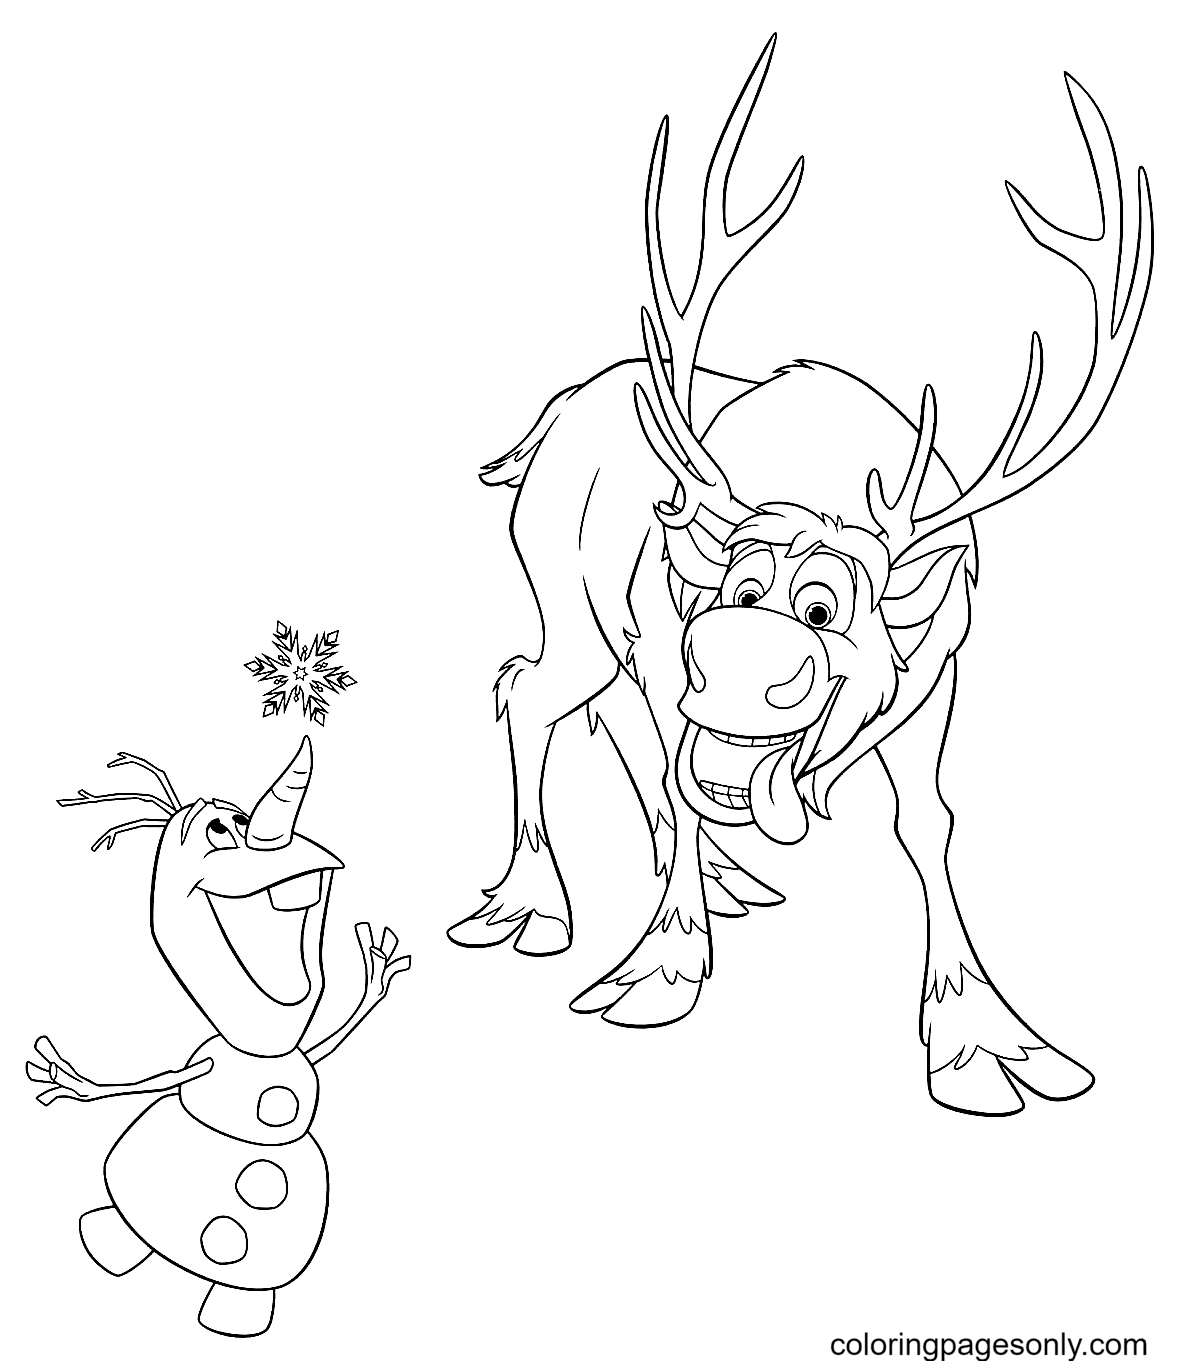 Sven e Olaf catturano i fiocchi di neve da Olaf